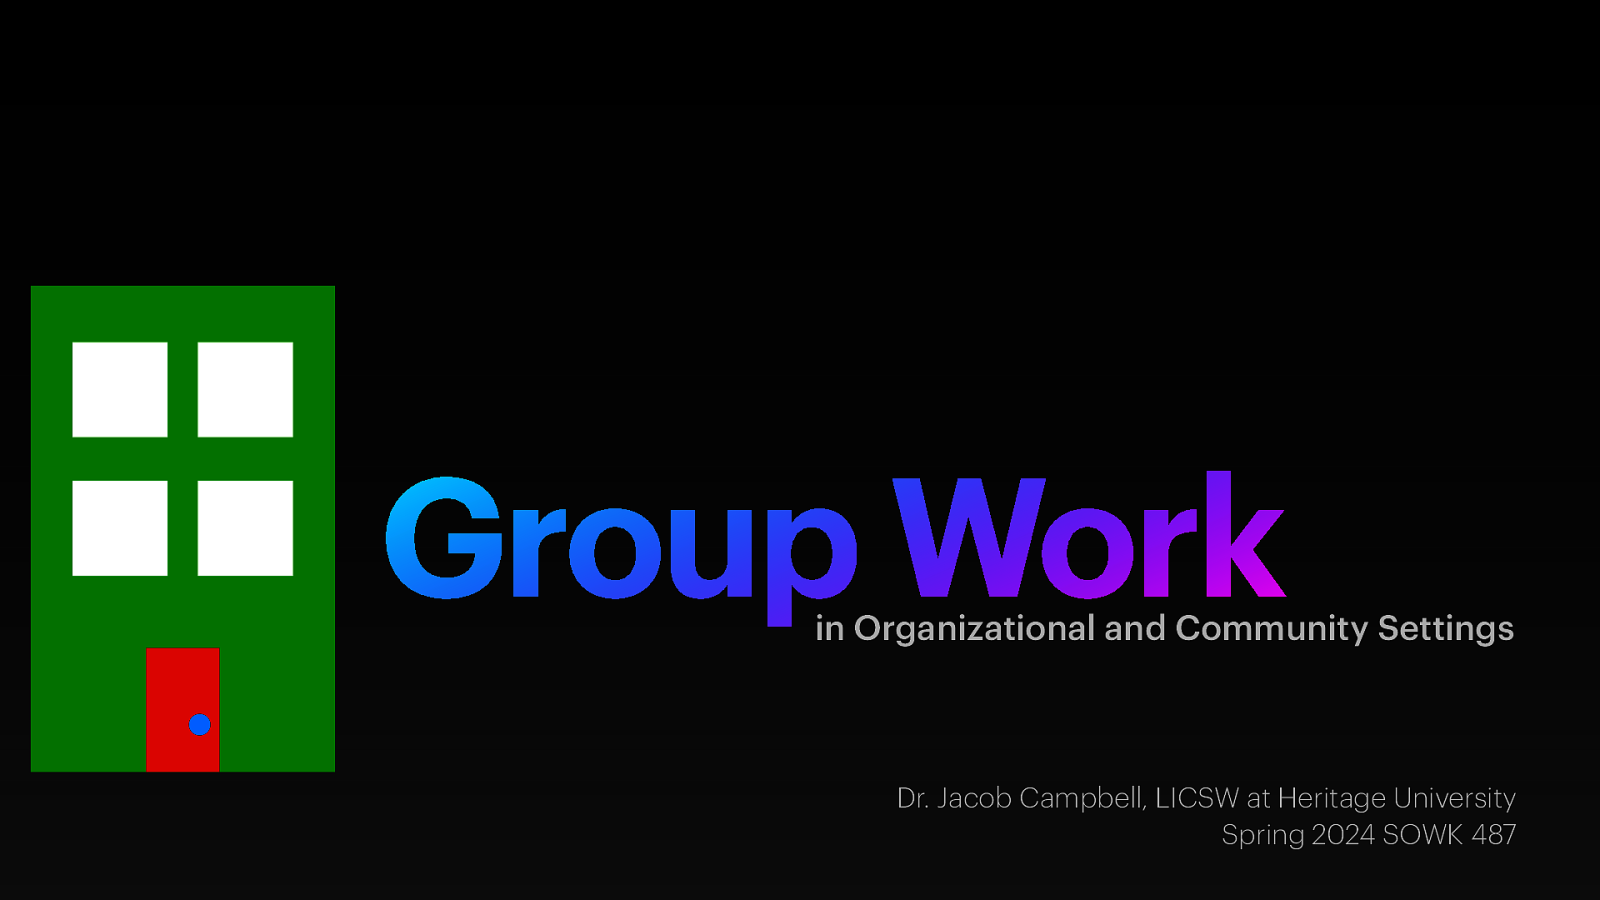 Spring 2024 SOWK 487w Week 15: Group Work in Organizations and Community Settings